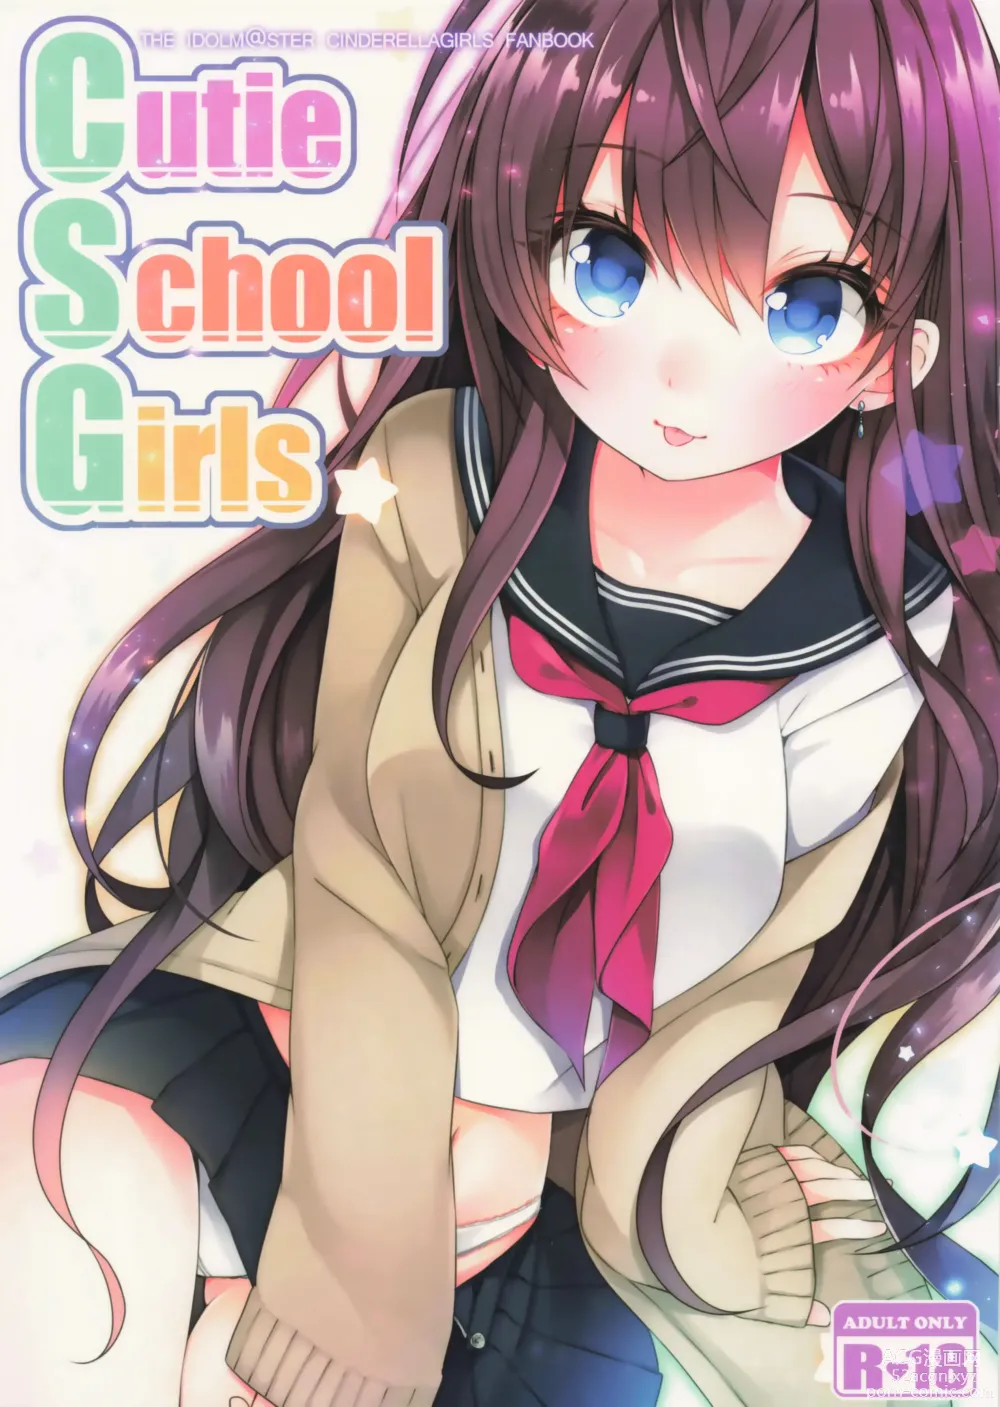 Page 1 of doujinshi Cutie School Girls